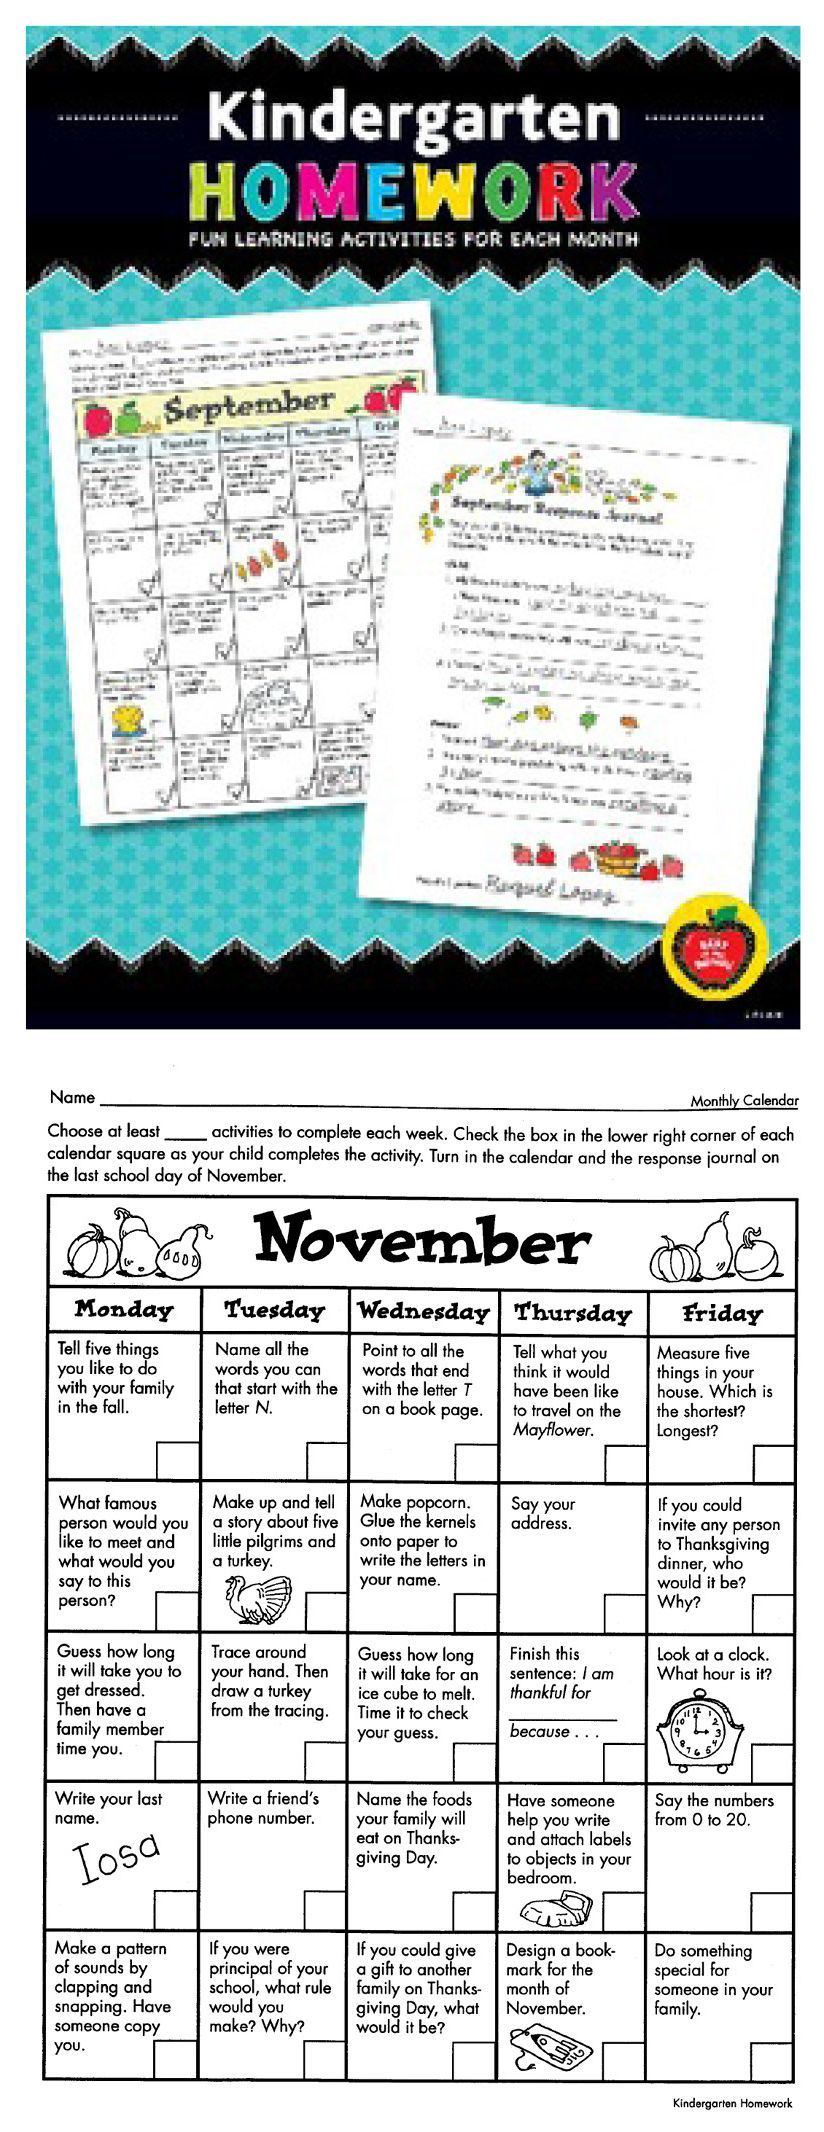 Kindergarten Homework: Fun Learning Activities For Each